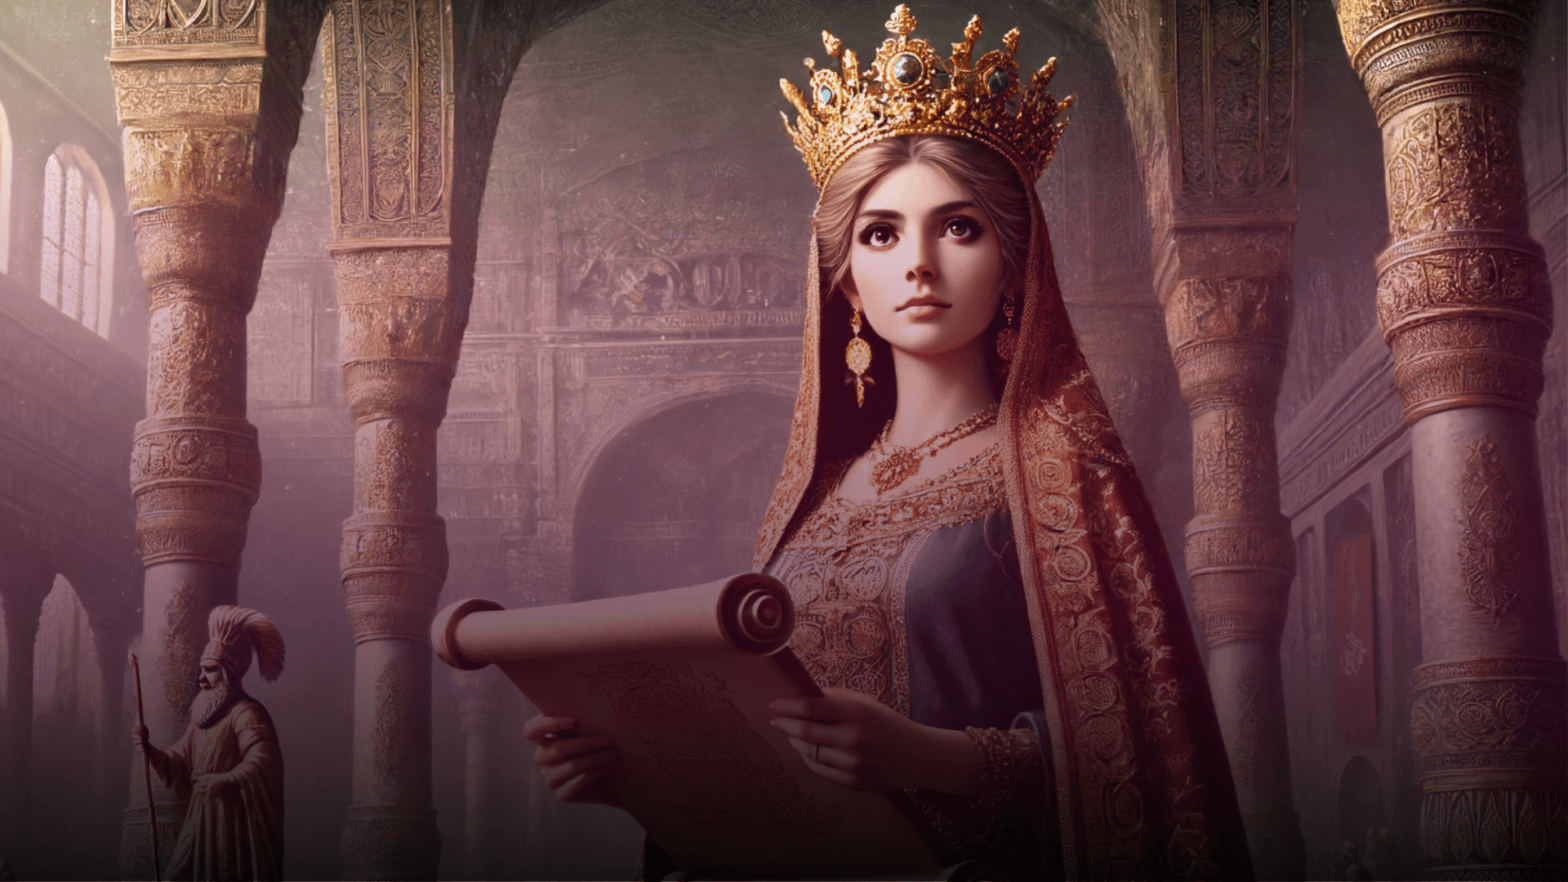 Rainha Ester em pé confiantemente no palácio persa, vestida com trajes reais e uma coroa dourada, segurando um pergaminho.